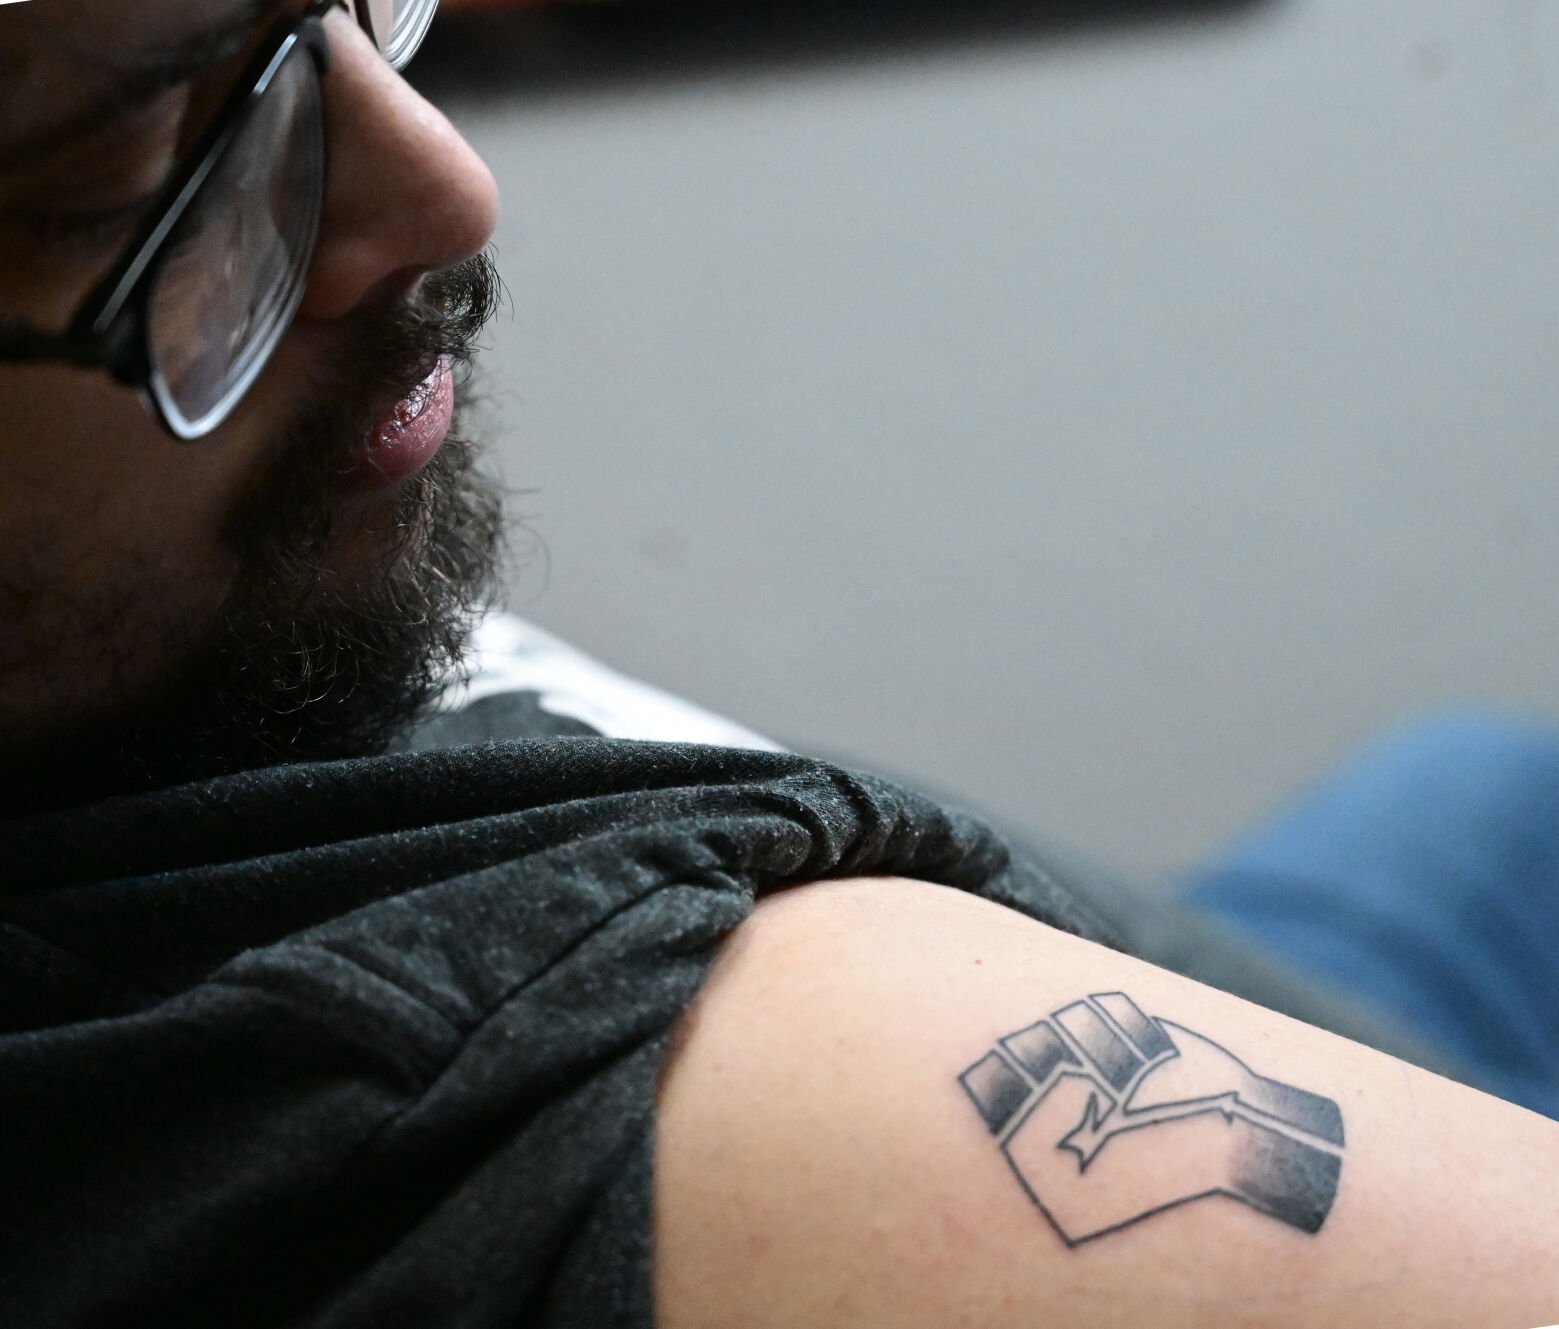 Denver tattoo artist Alicia Cardenas among the victims of mass shooting   Denverite the Denver site